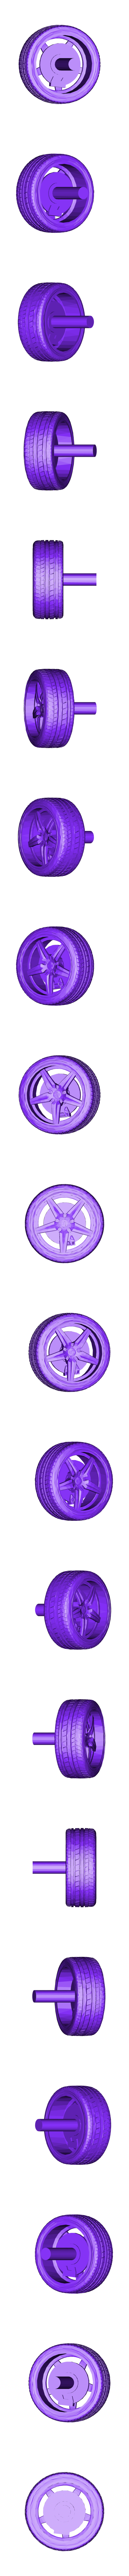 Wheel.stl Télécharger fichier STL gratuit Ford Mustang GT - Modèle 1:64 • Plan à imprimer en 3D, Gophy